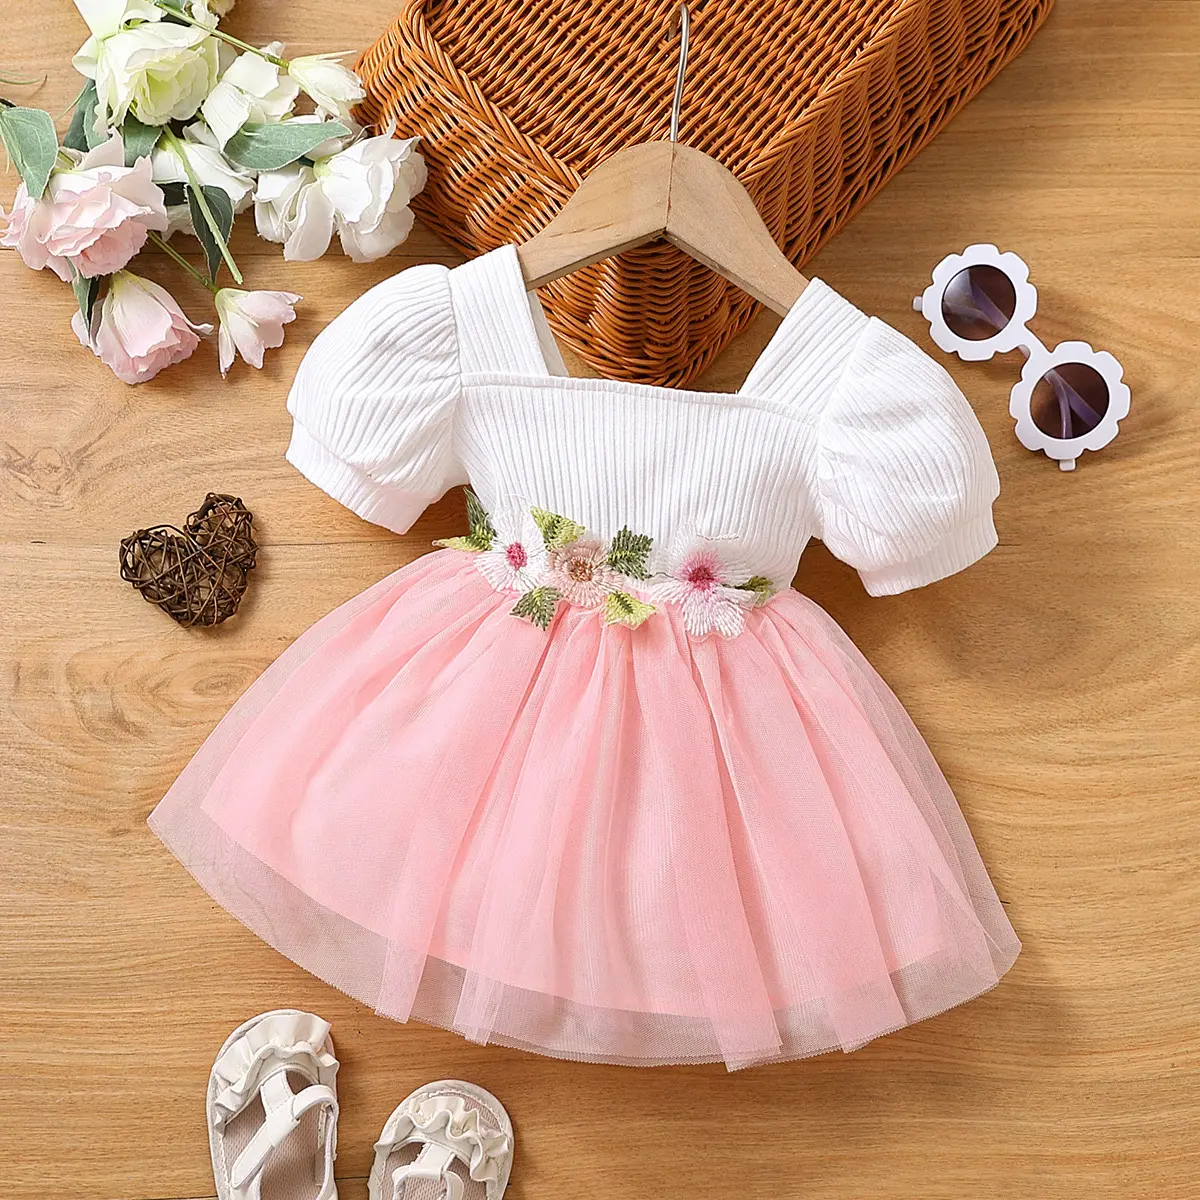 Neu angekommene Schmetterling Puffy Mesh Prinzessin Neugeborene Kleid Mädchen Kleidung